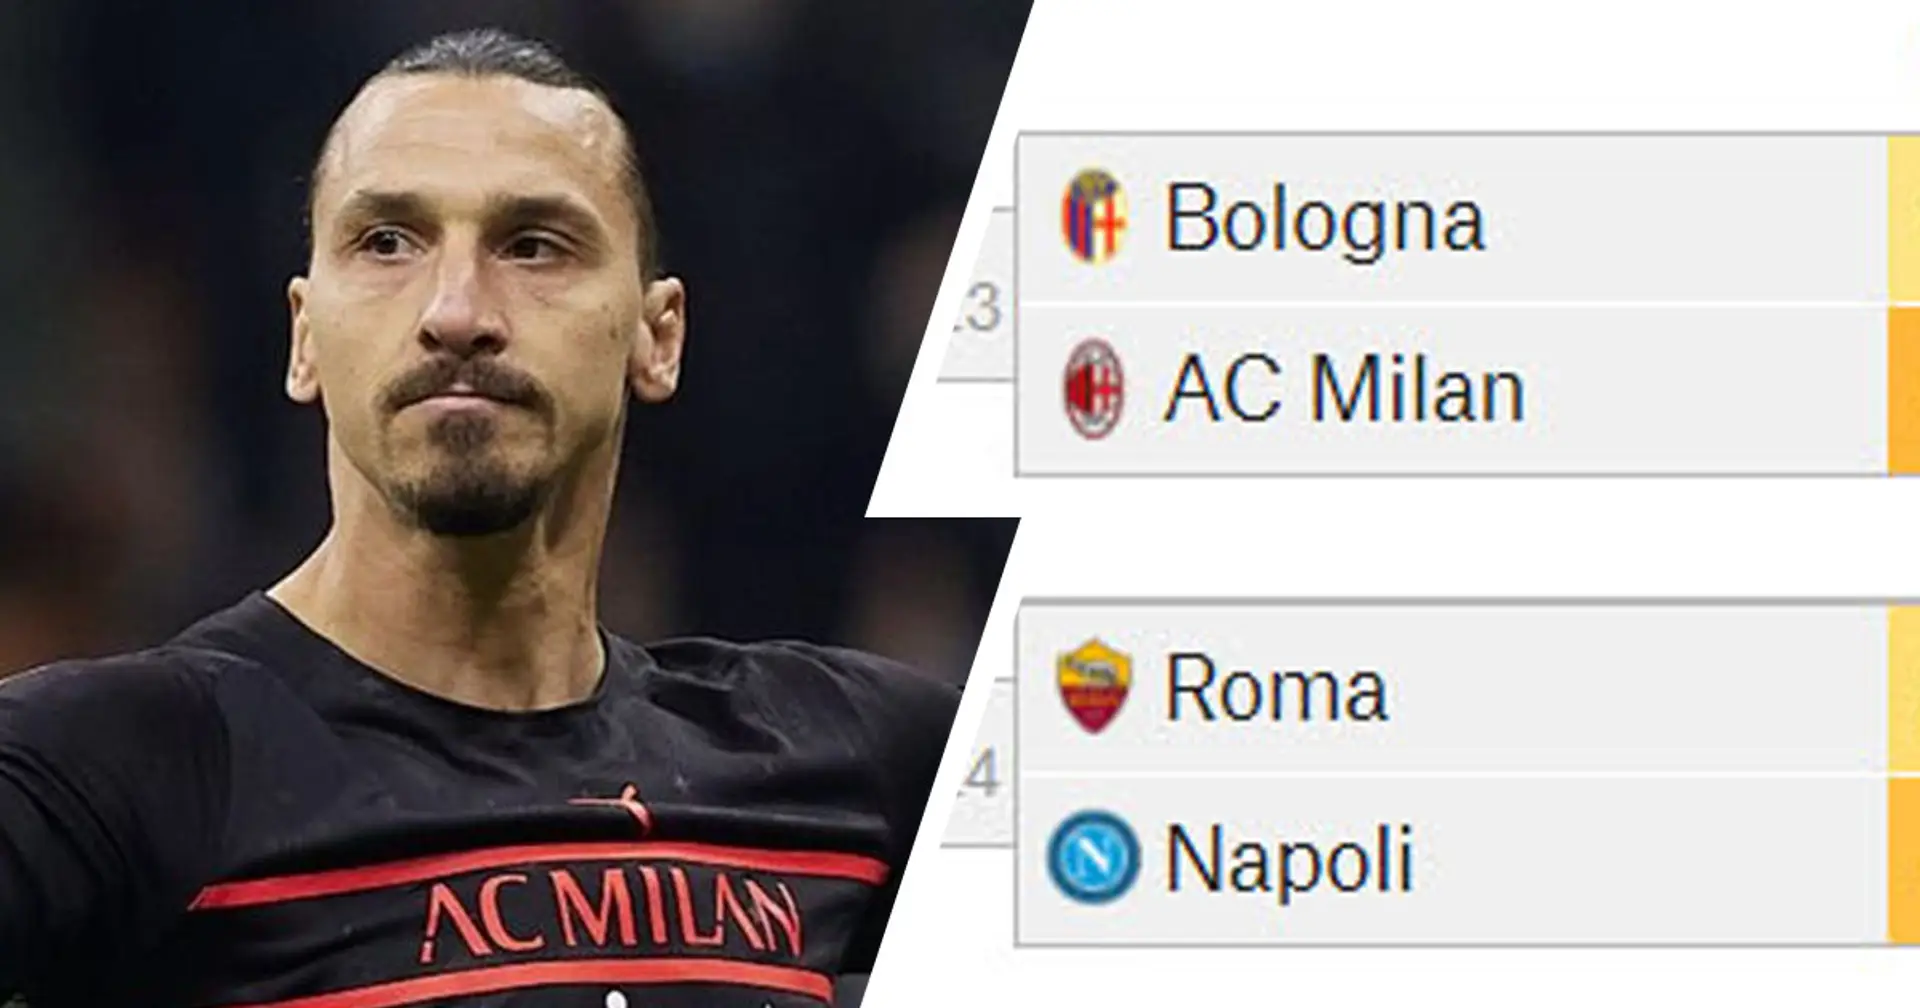 Il Milan riuscirà a battere il Bologna? Un supercomputer predice le chances dei rossoneri